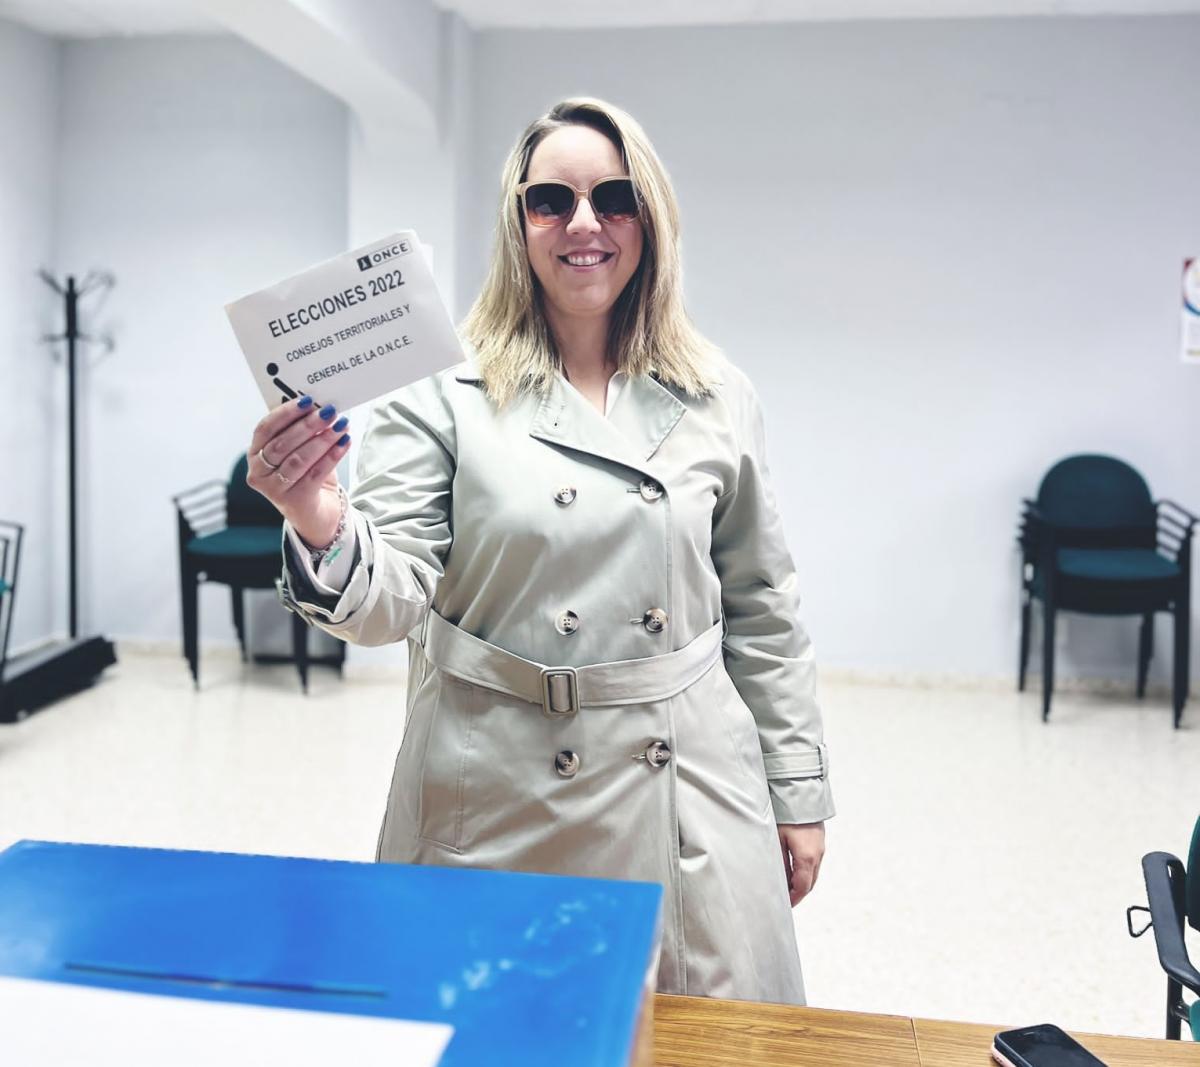 La candidata de Unidad Progresista, Anabel Mercado, vota en su mesa electoral de Osuna (Sevilla)